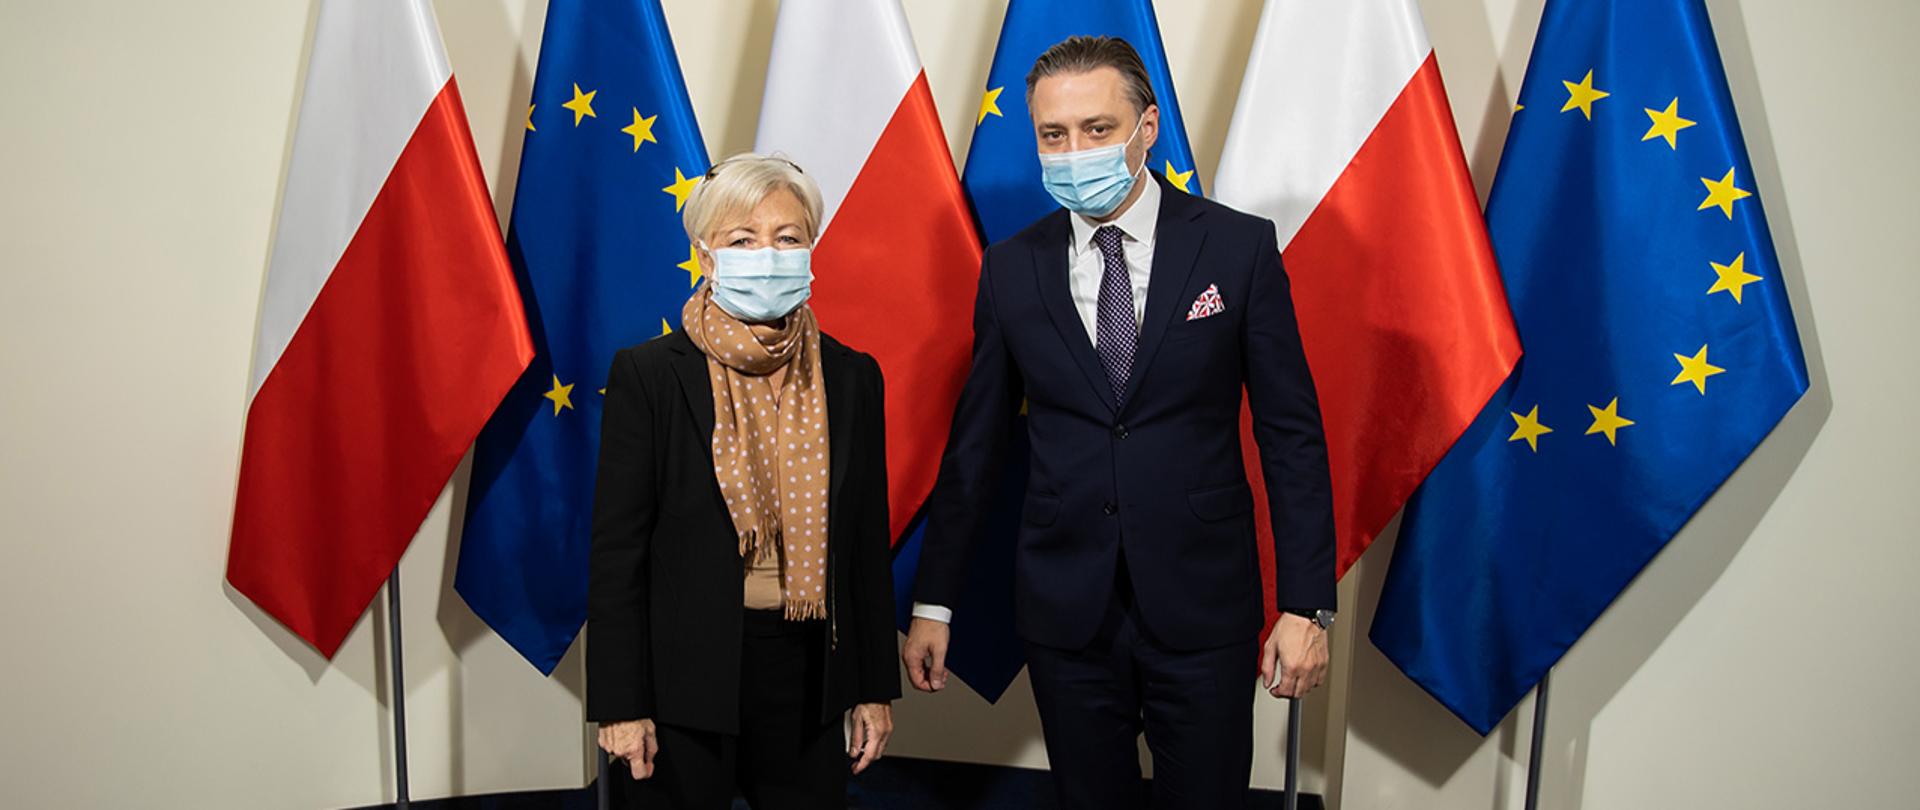 Na zdjęciu widać wiceministra Bartosza Grodeckiego z Monique Pariat Dyrektor Generalną w Dyrekcji Generalnej ds. Migracji i Spraw Wewnętrznych Komisji Europejskiej stojących na tle flag Polski i UE.